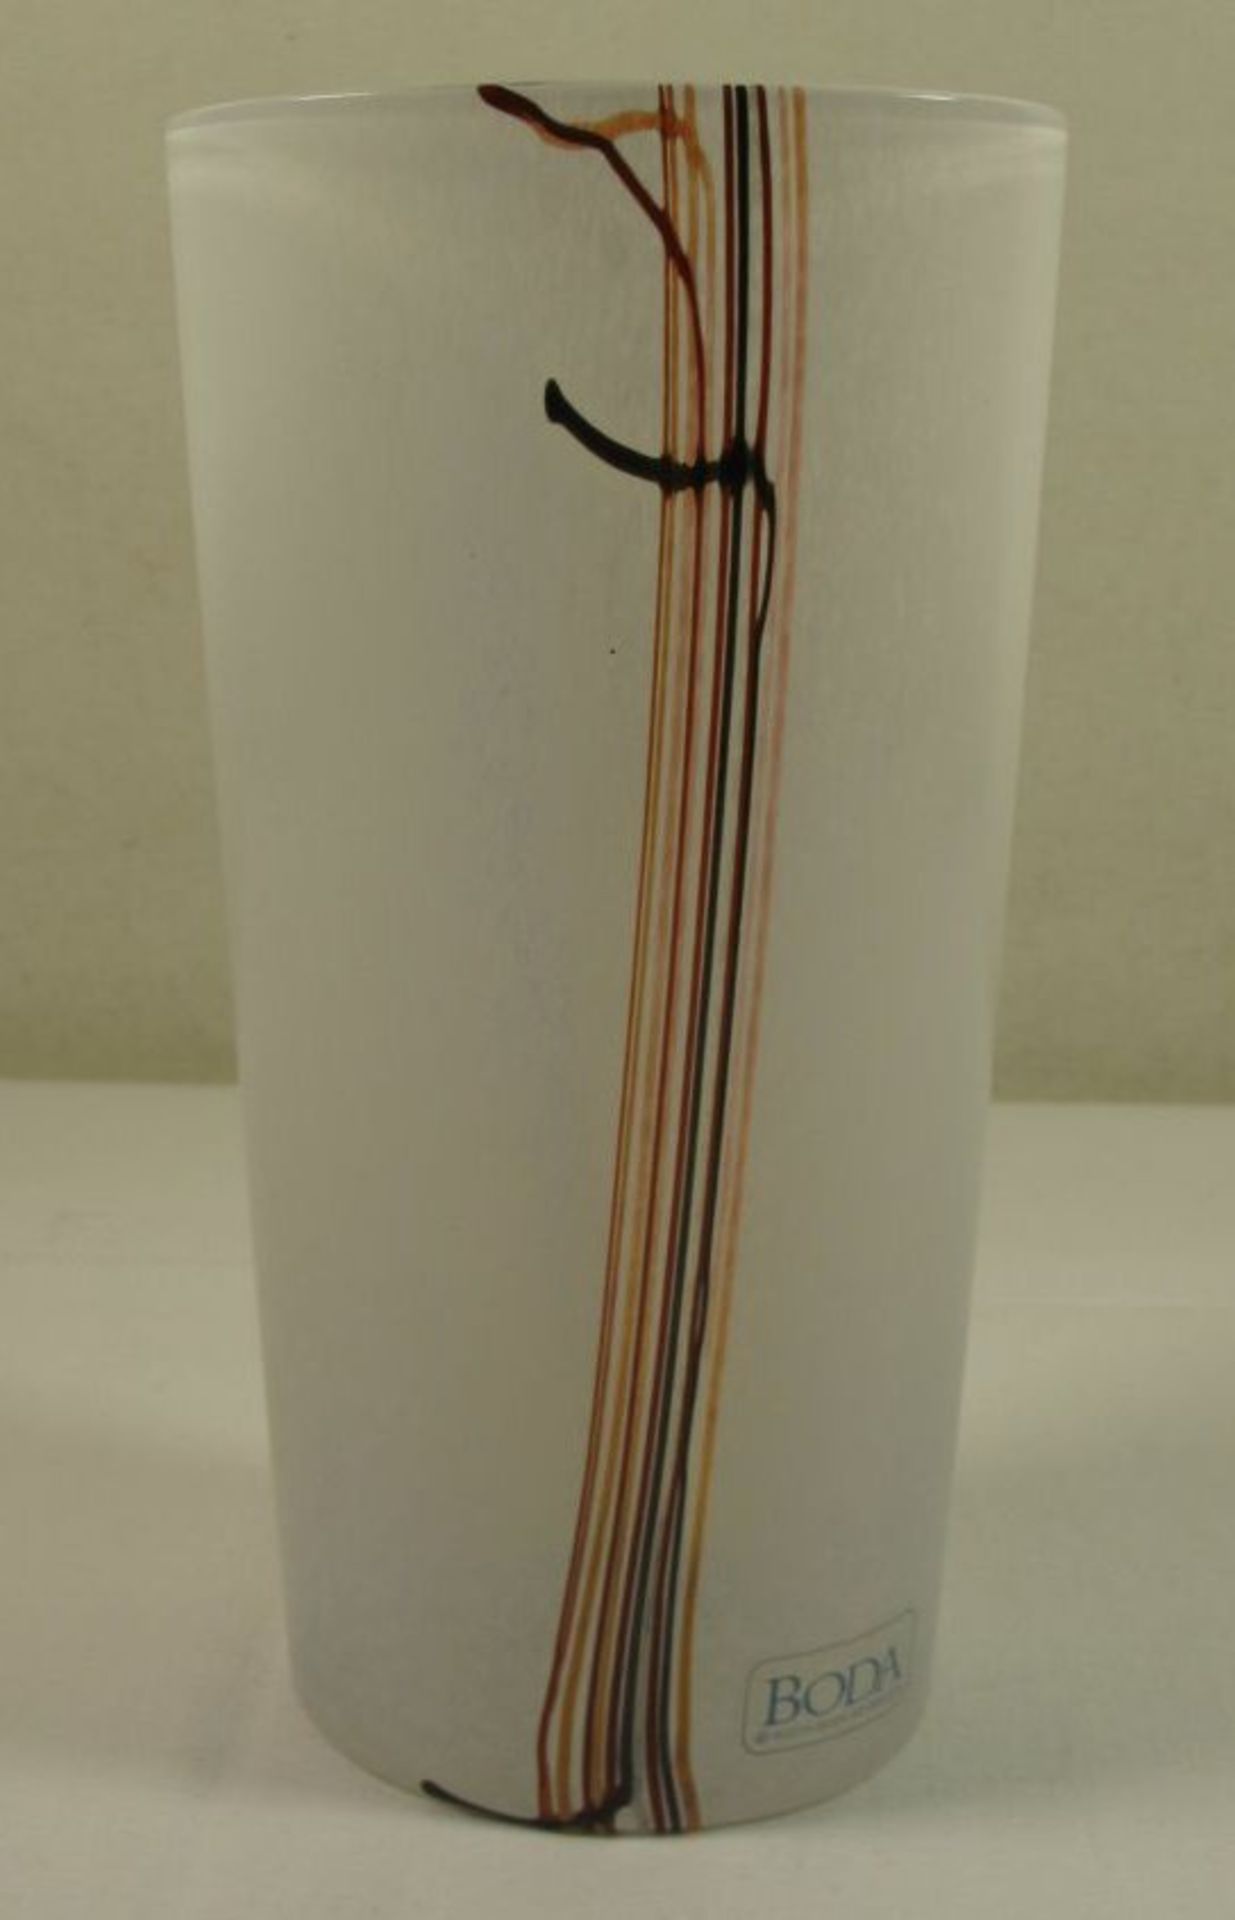 Kunstglasvase, Etikett "Boda", H-18,5cm.